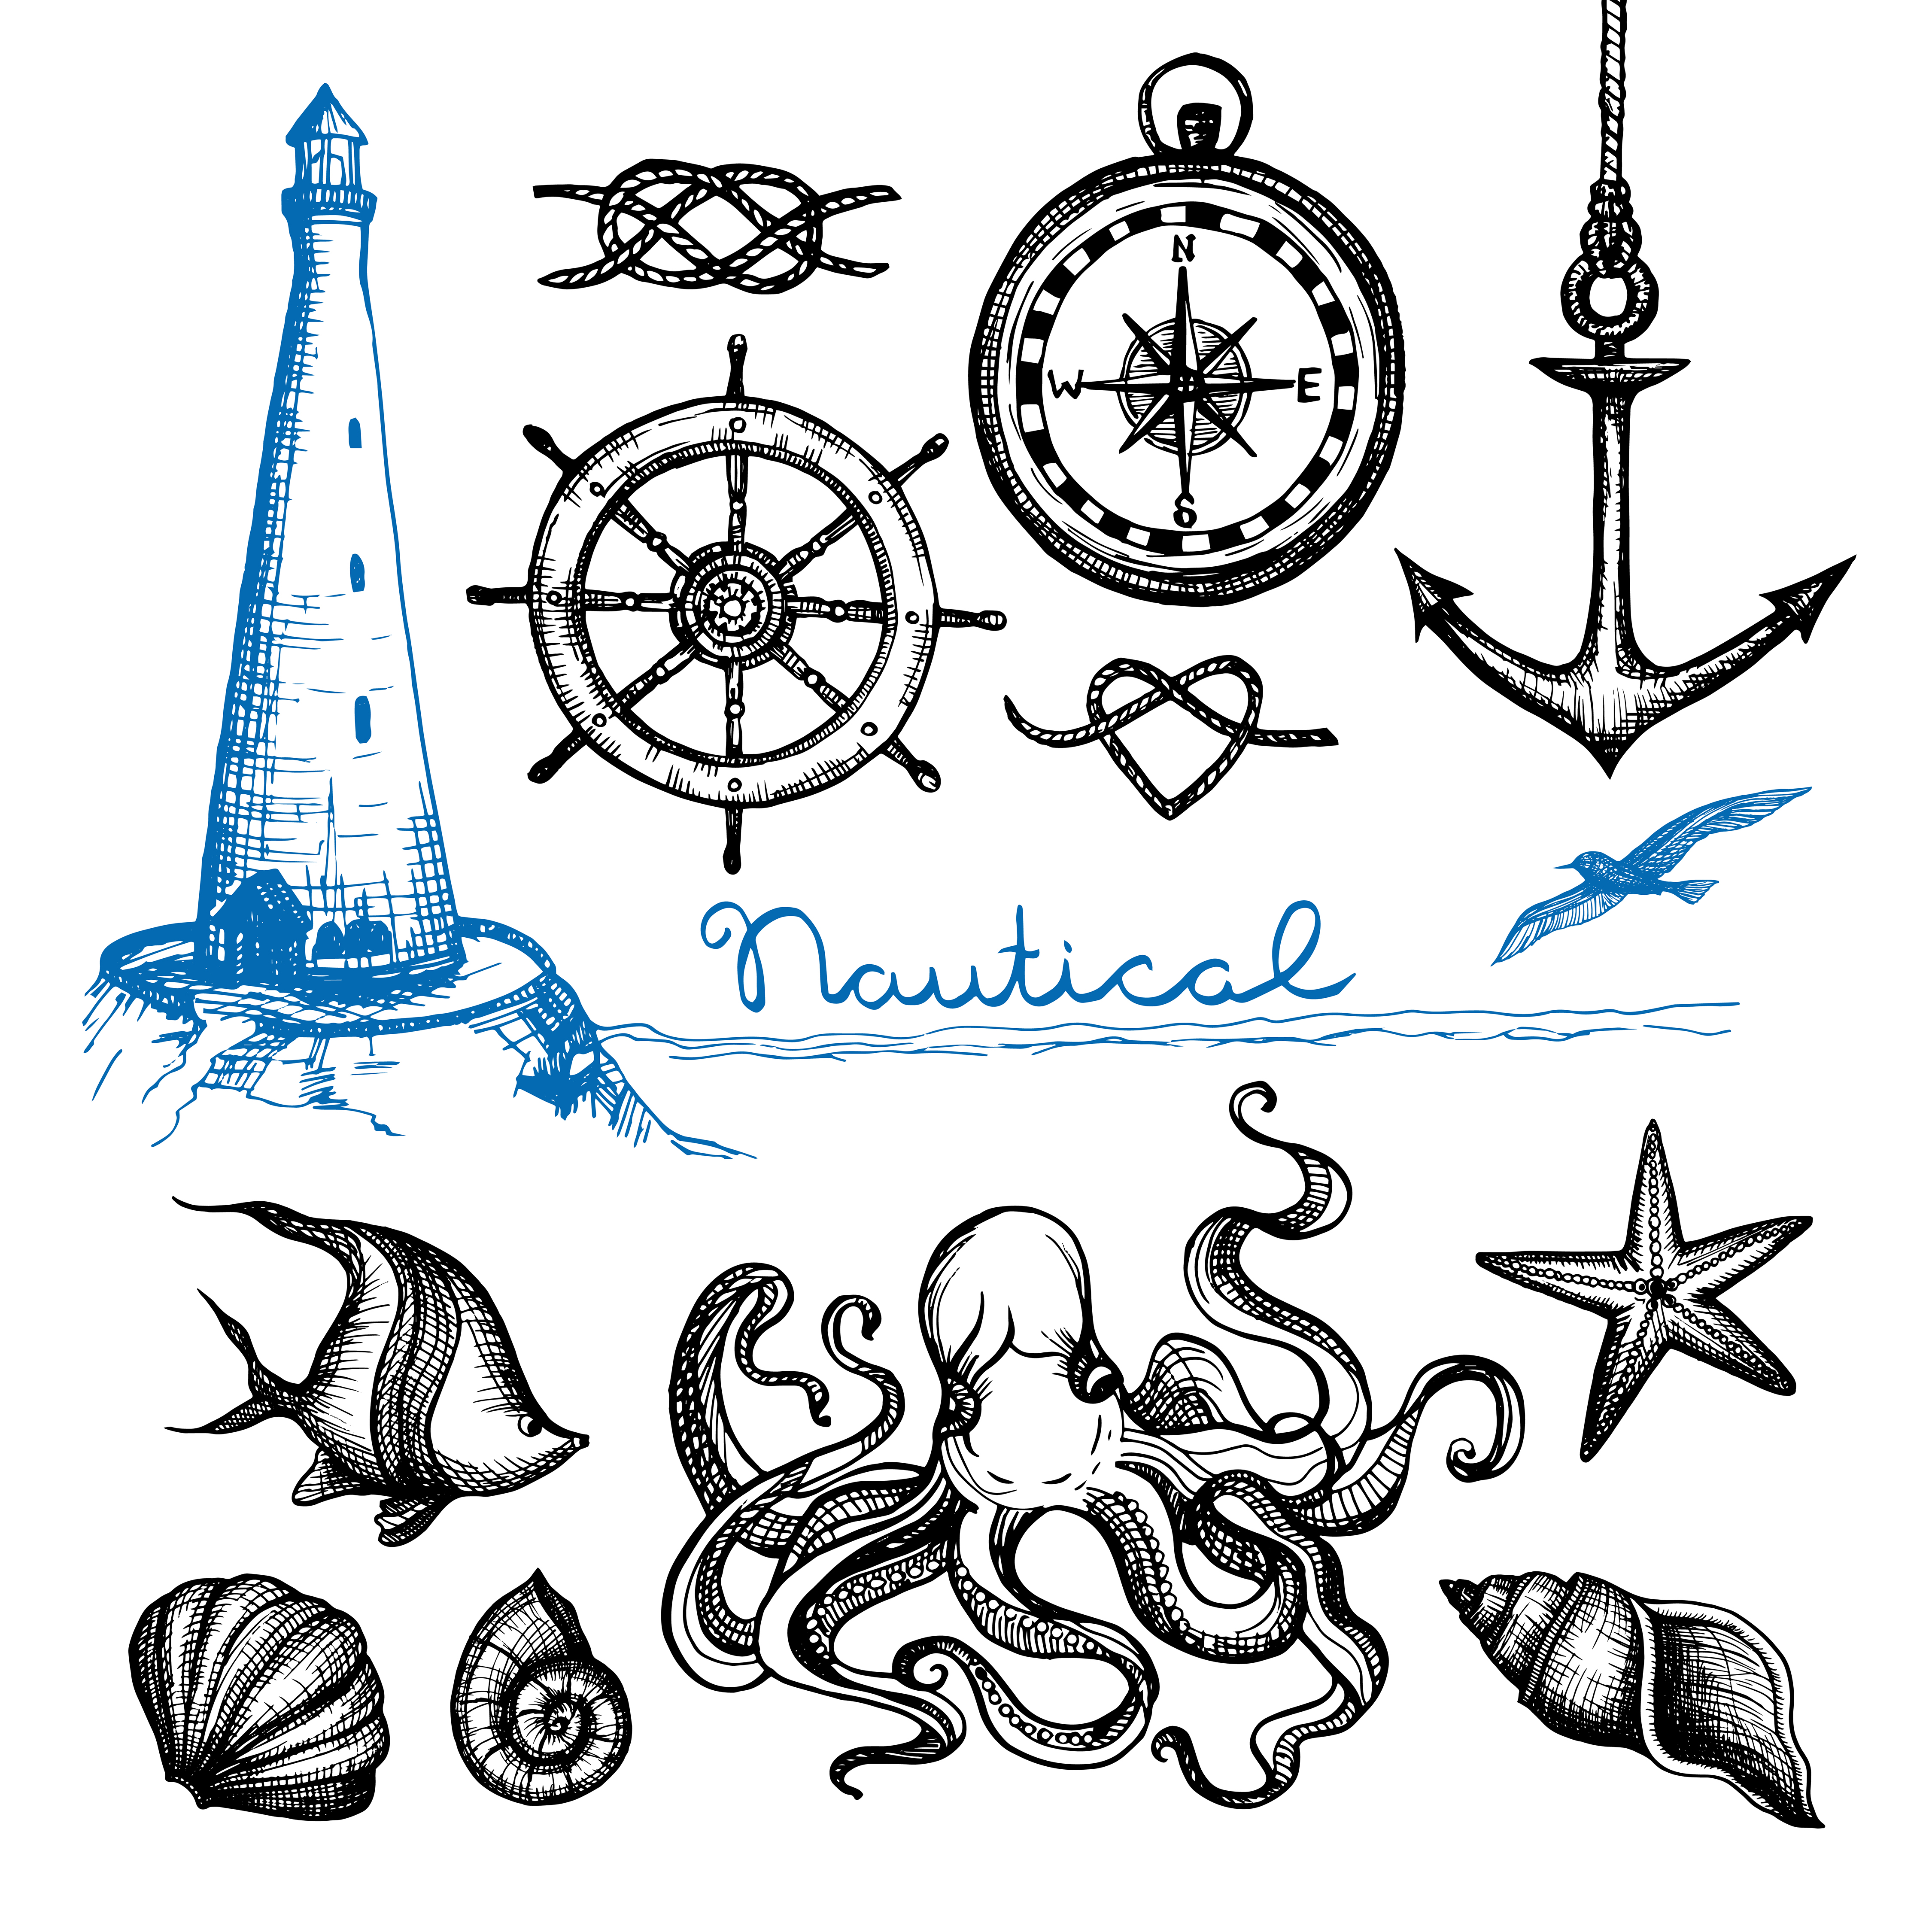 Download Nautical Hand Drawn Set - Download Free Vectors, Clipart Graphics & Vector Art